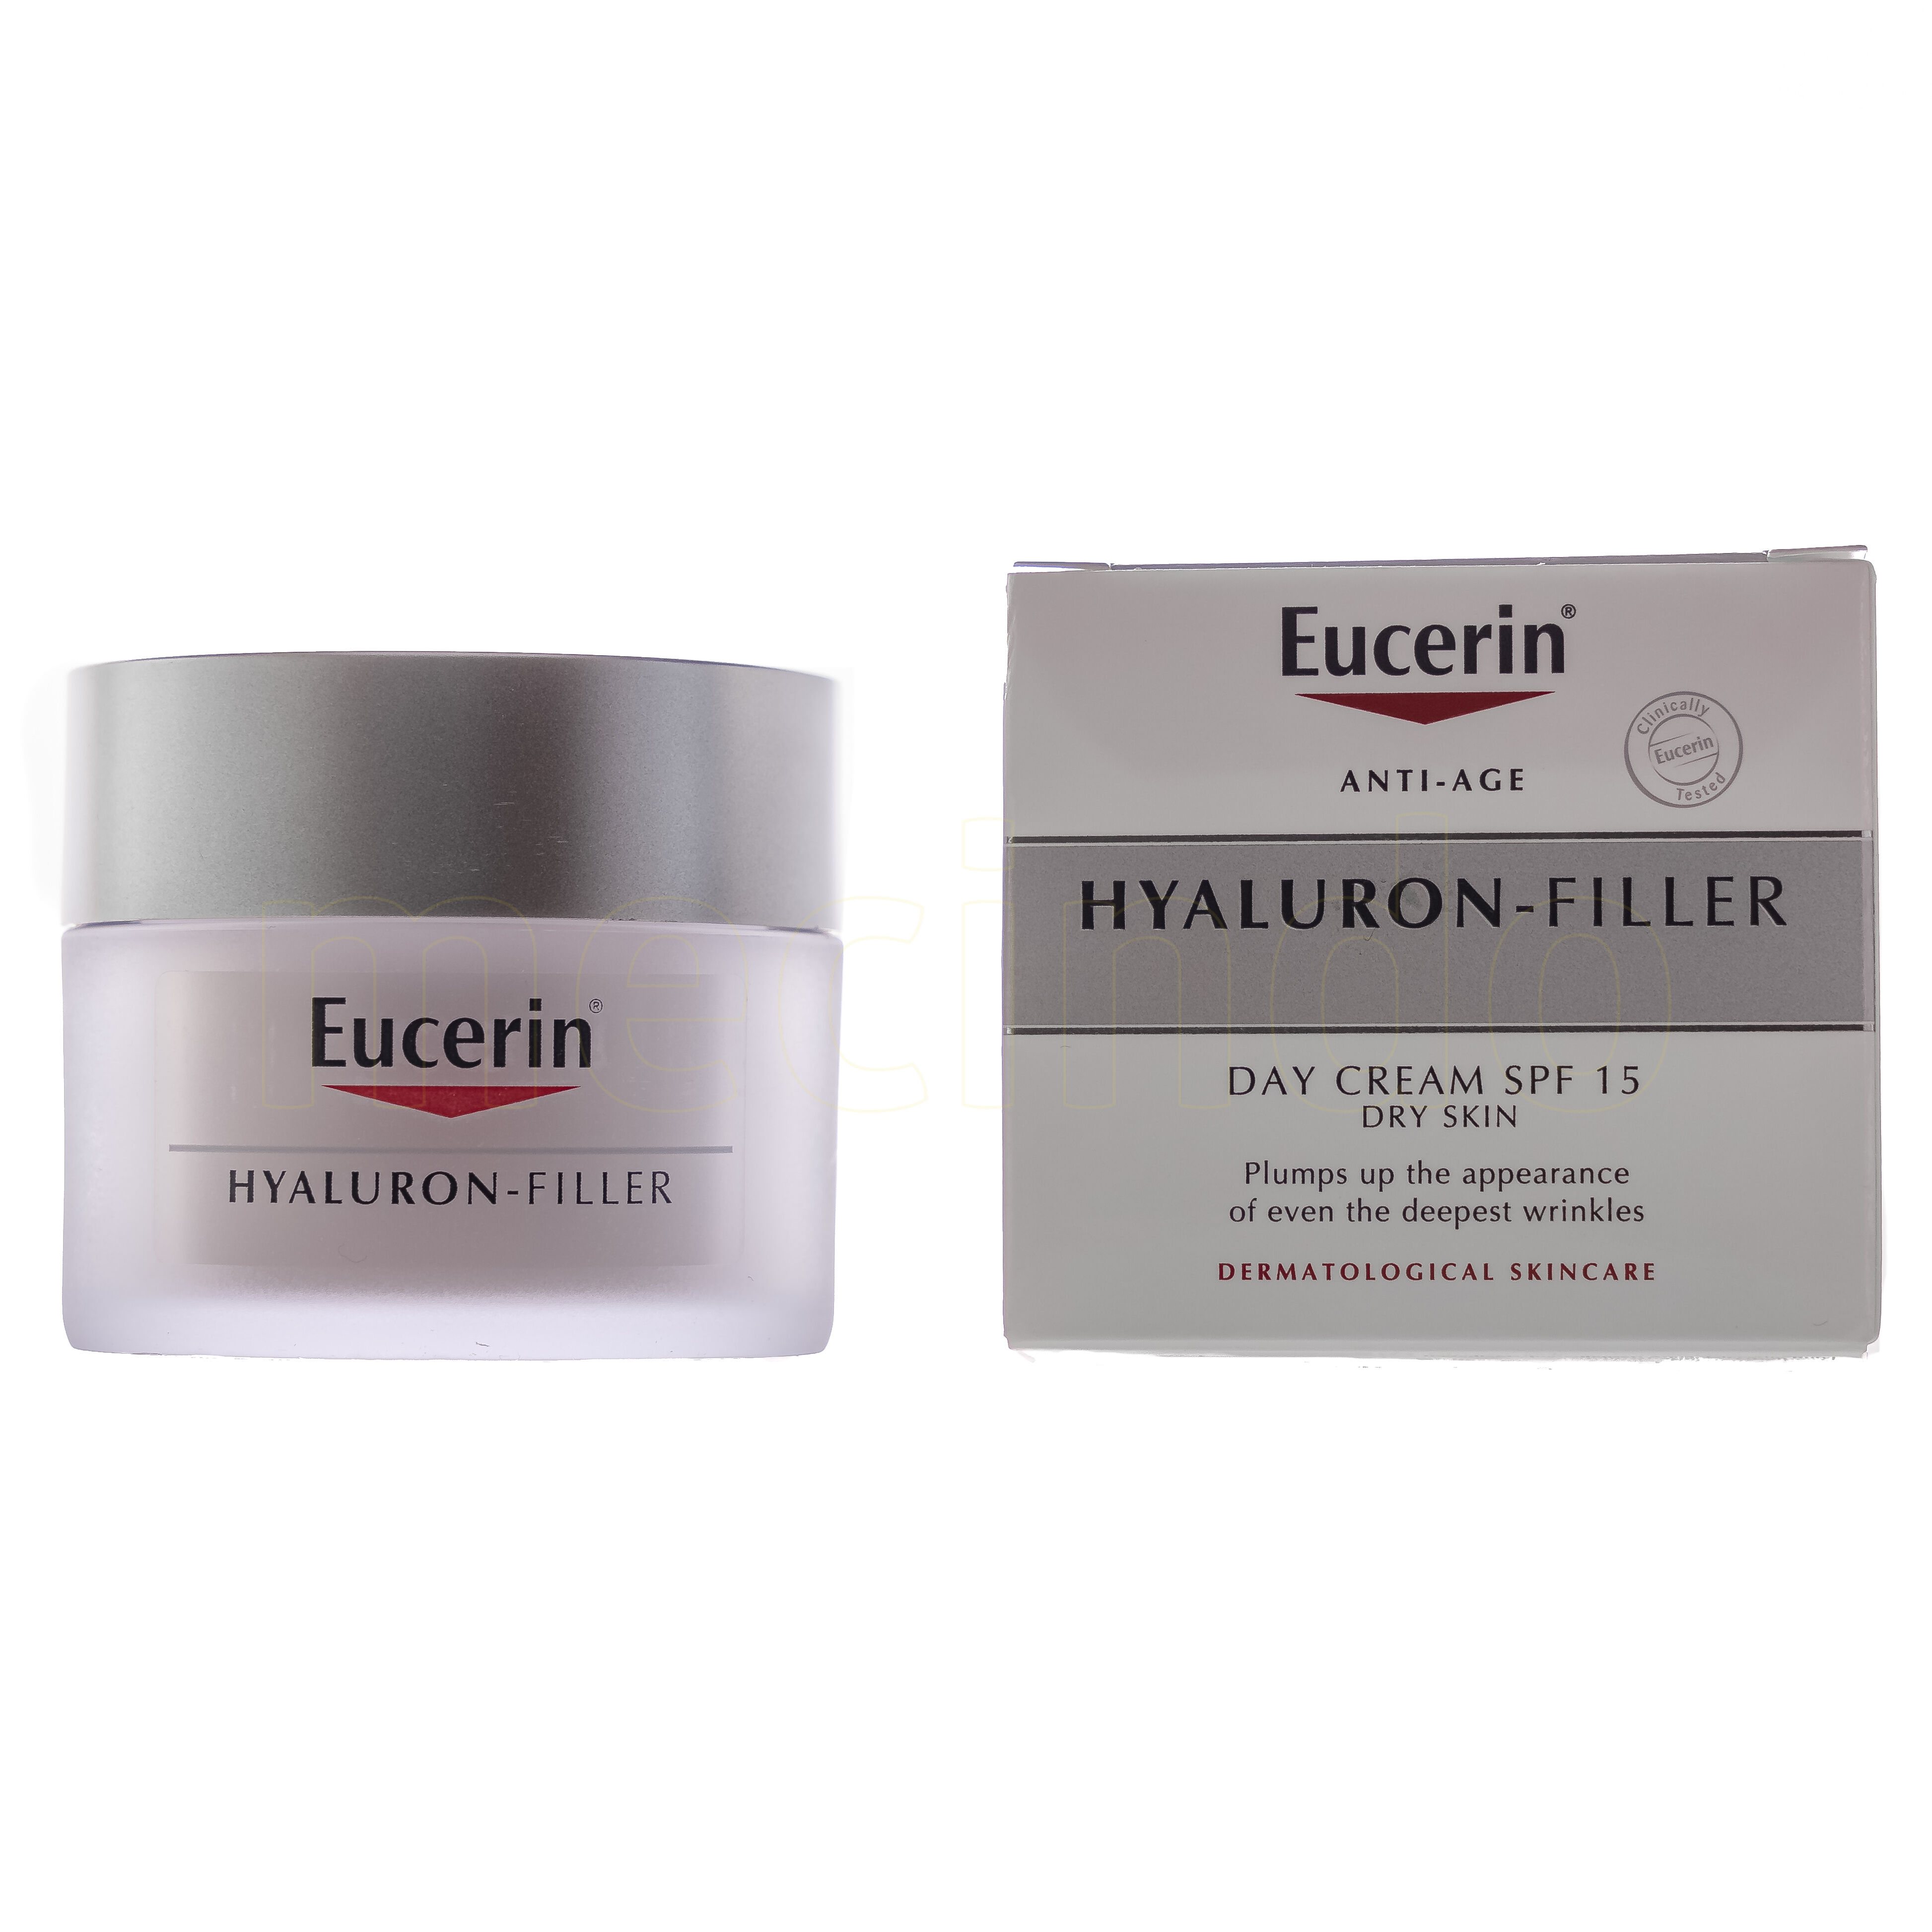 Eucerin Hyaluron-Filler Dagkrem for tørr hud - 15 SPF - 50 ml